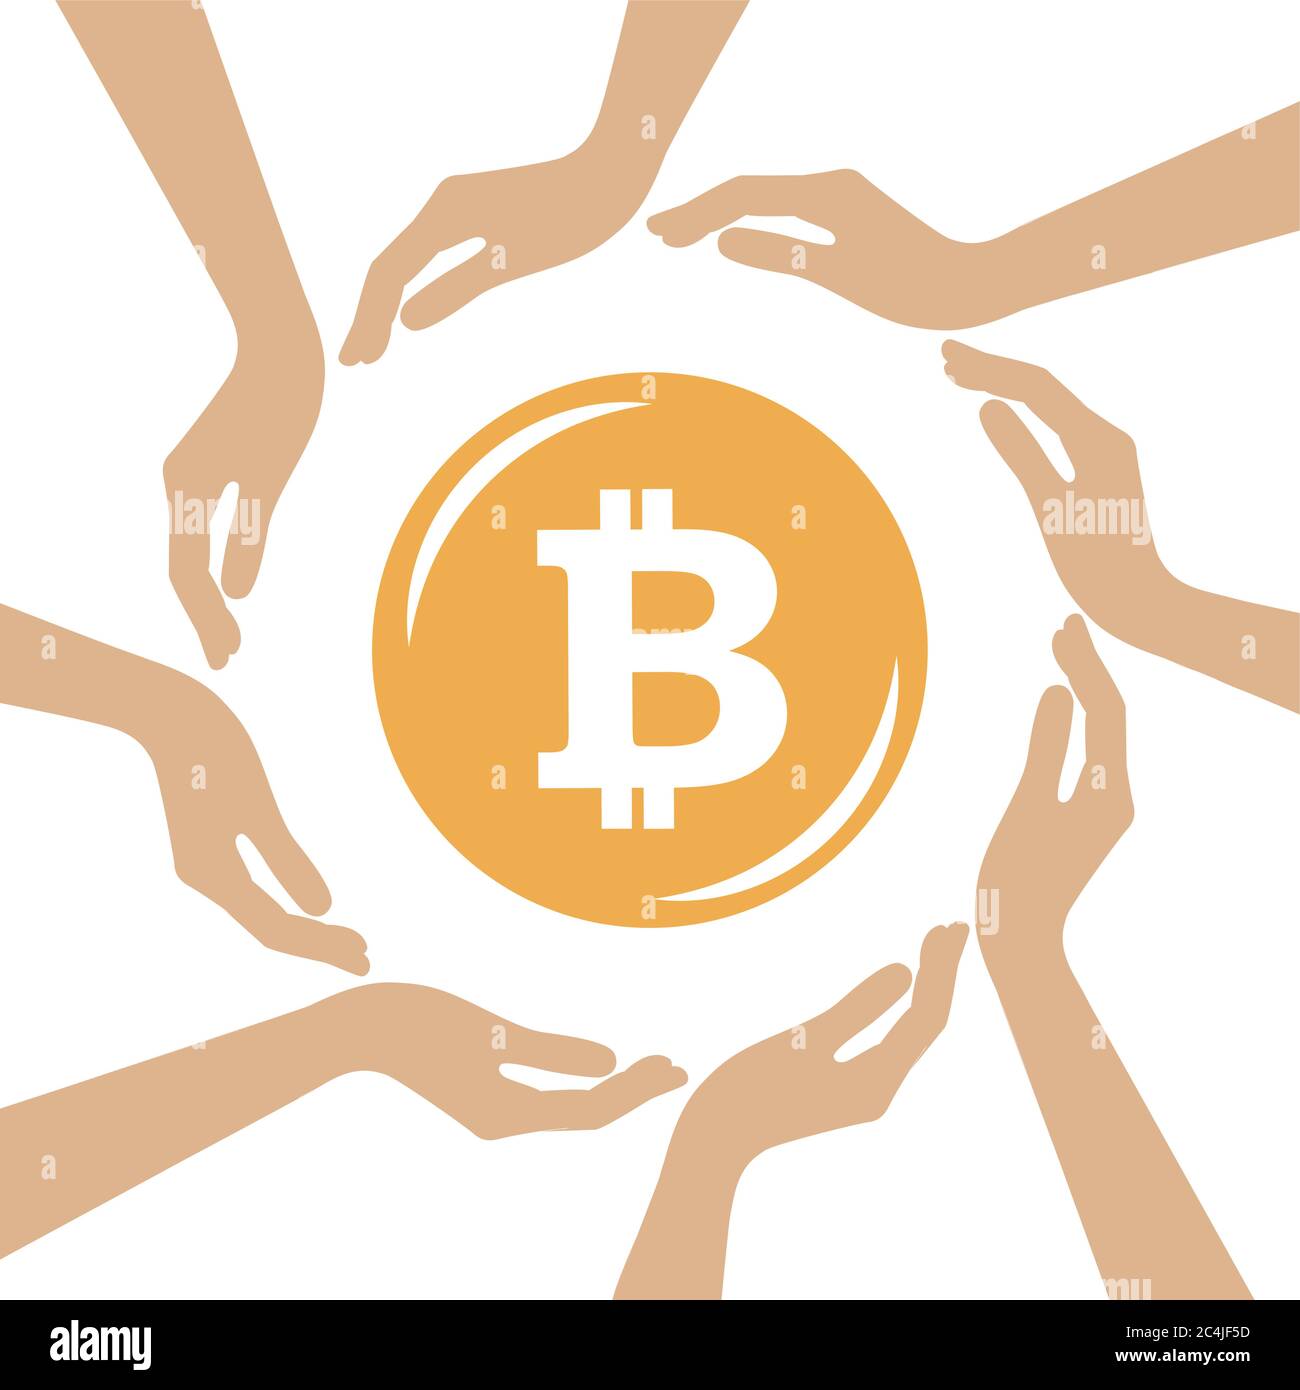 bitcoin Krypto Währungssymbol in der Mitte der menschlichen Hände Vektor-Illustration EPS10 Stock Vektor